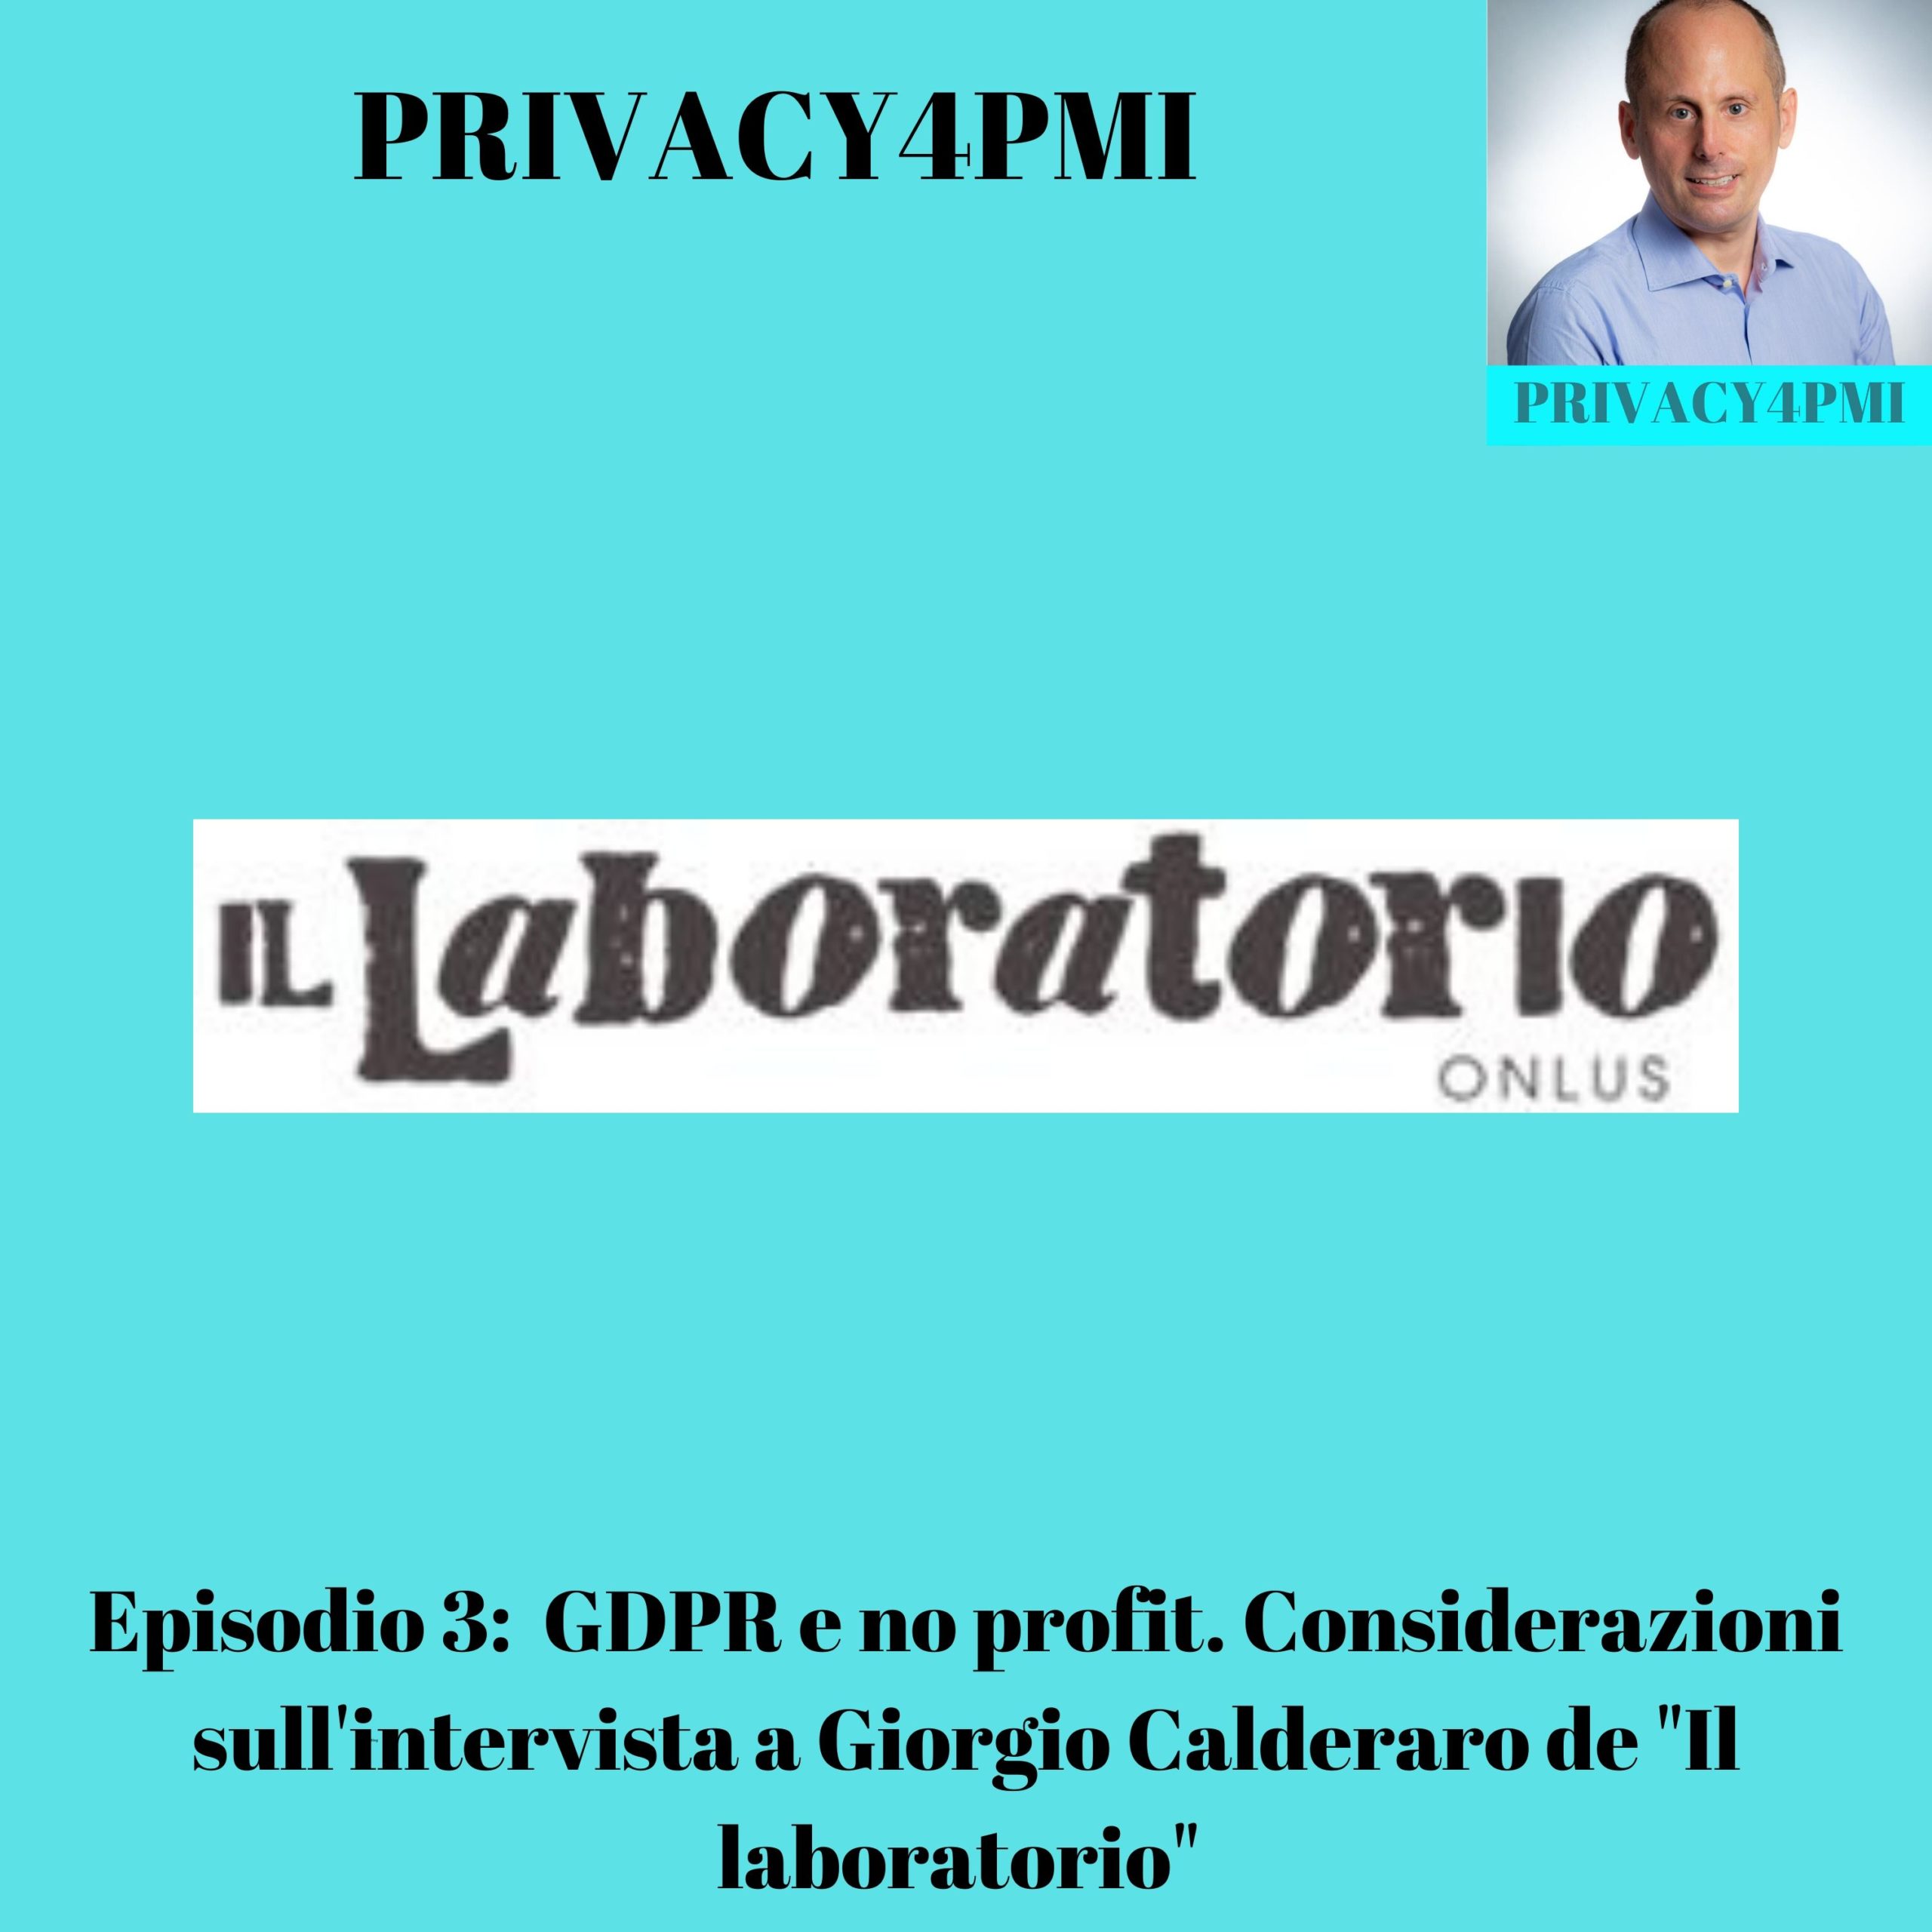 EPISODIO 3: GDPR e no profit. Considerazioni sull'intervista a Giorgio Calderaro. Indicazioni per le no profit su come mettersi a norma con il GDPR da Edoardo Facchini, consulente privacy